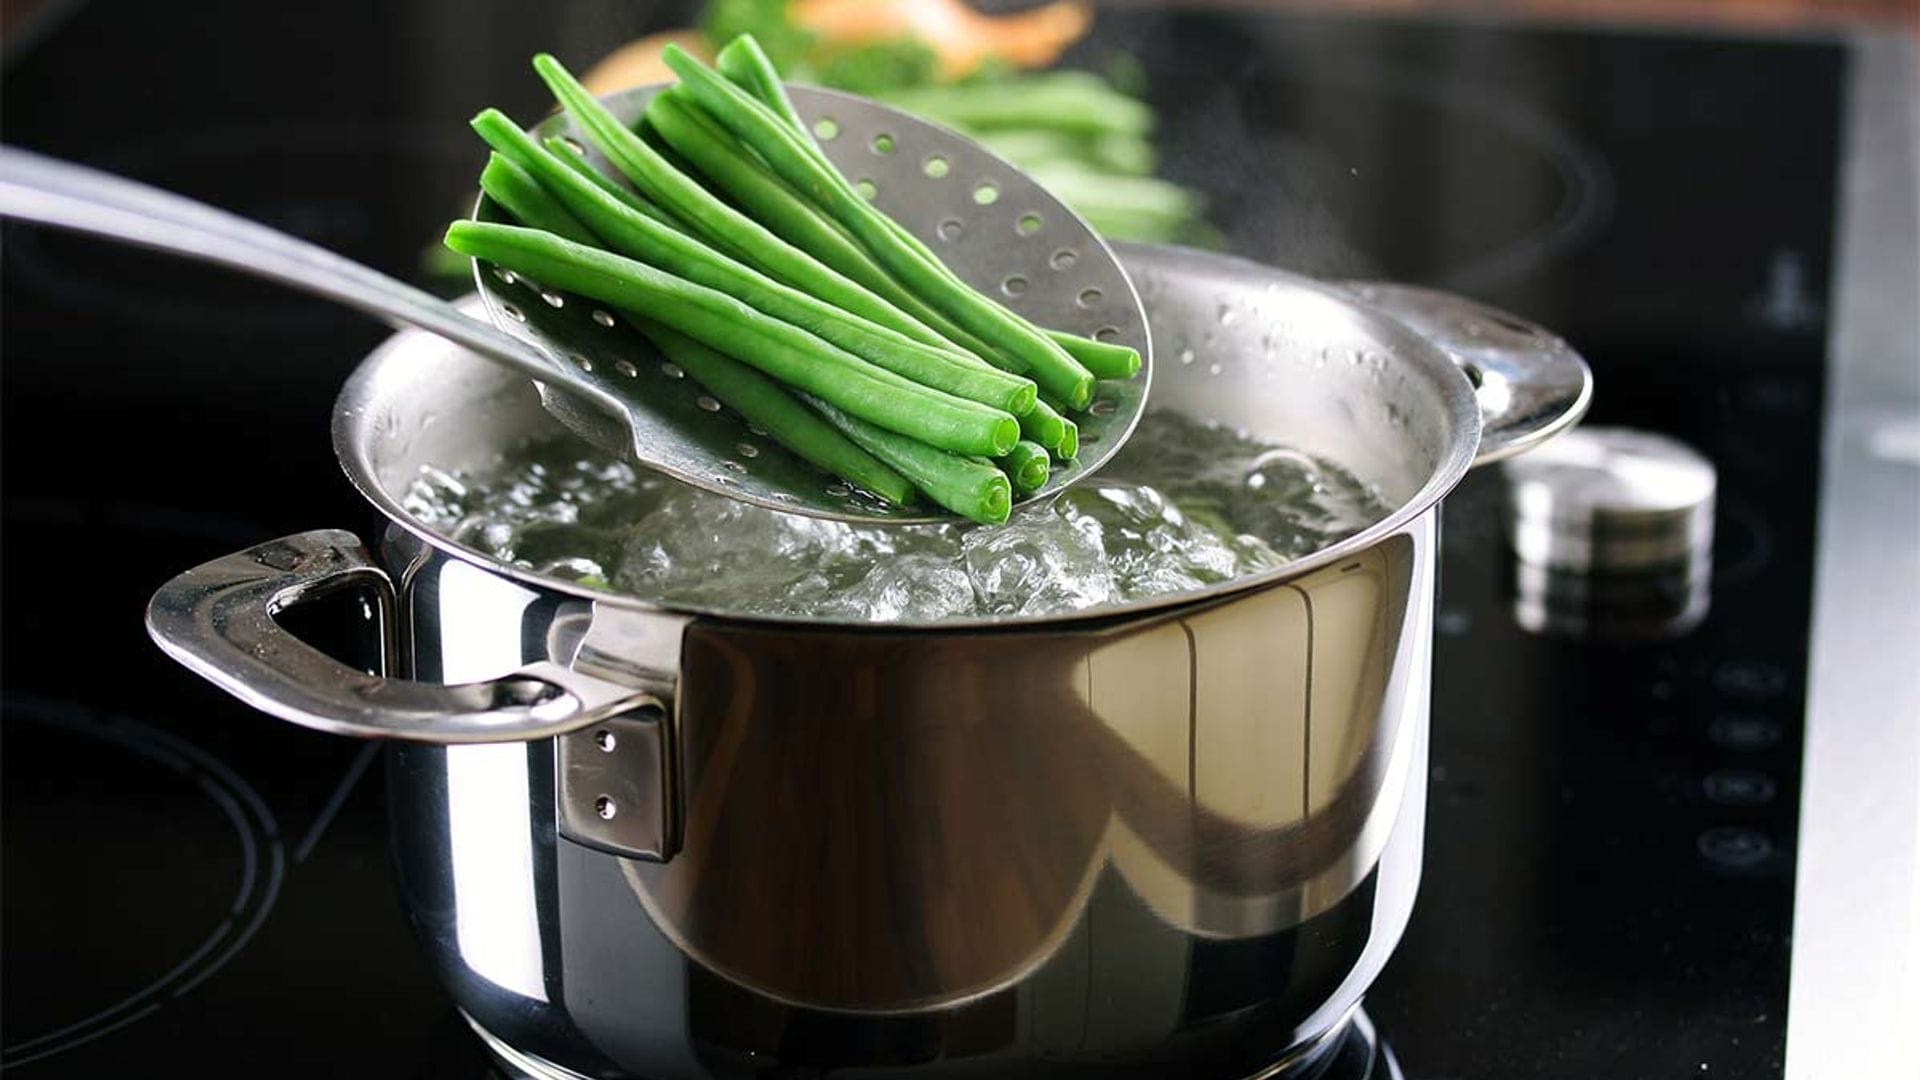 ¡No tires el agua de cocer verduras!